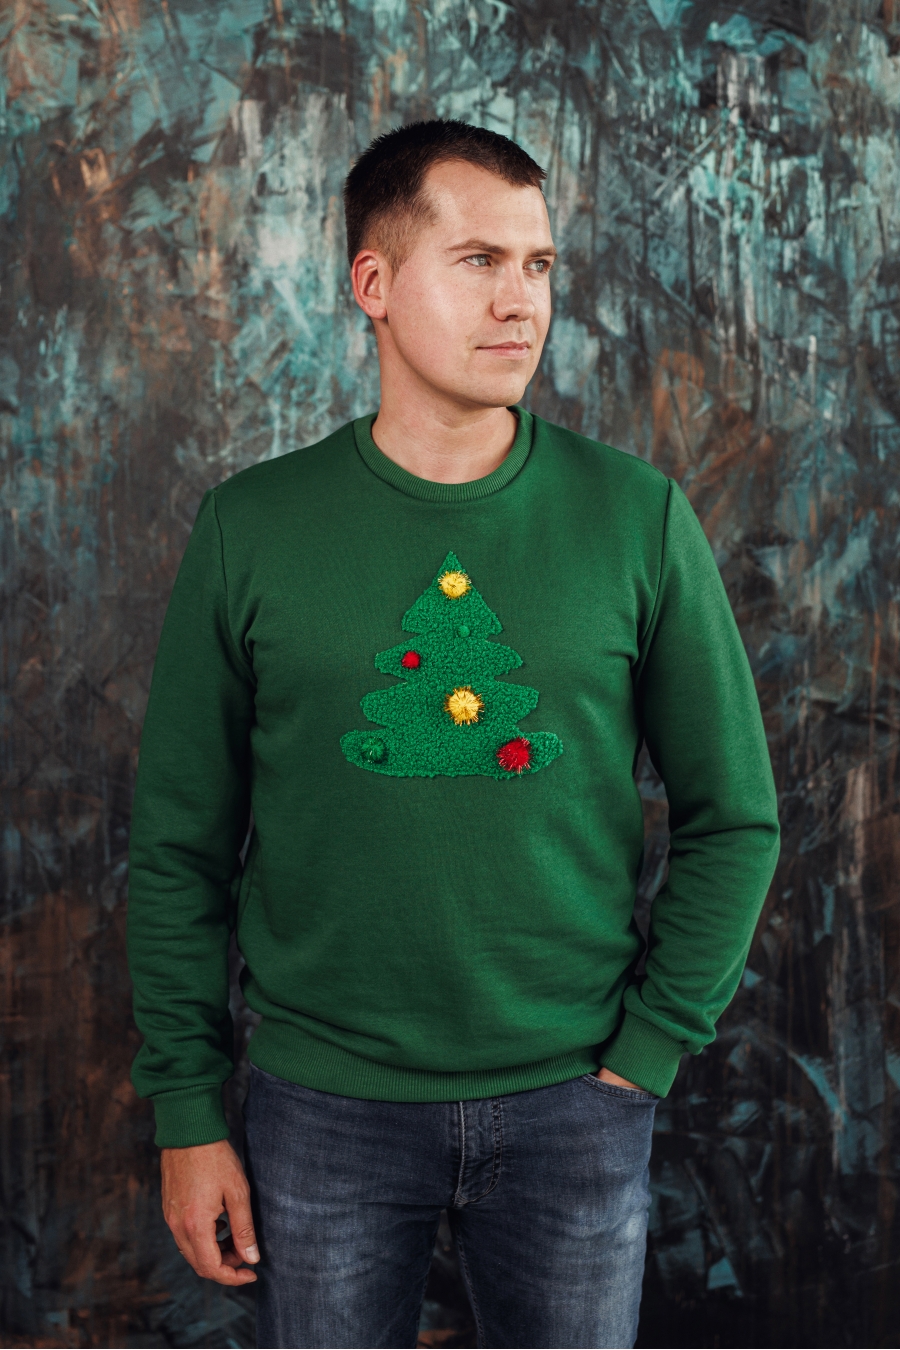 Vyriškas žalias kalėdinis megztukas su papuošta eglute